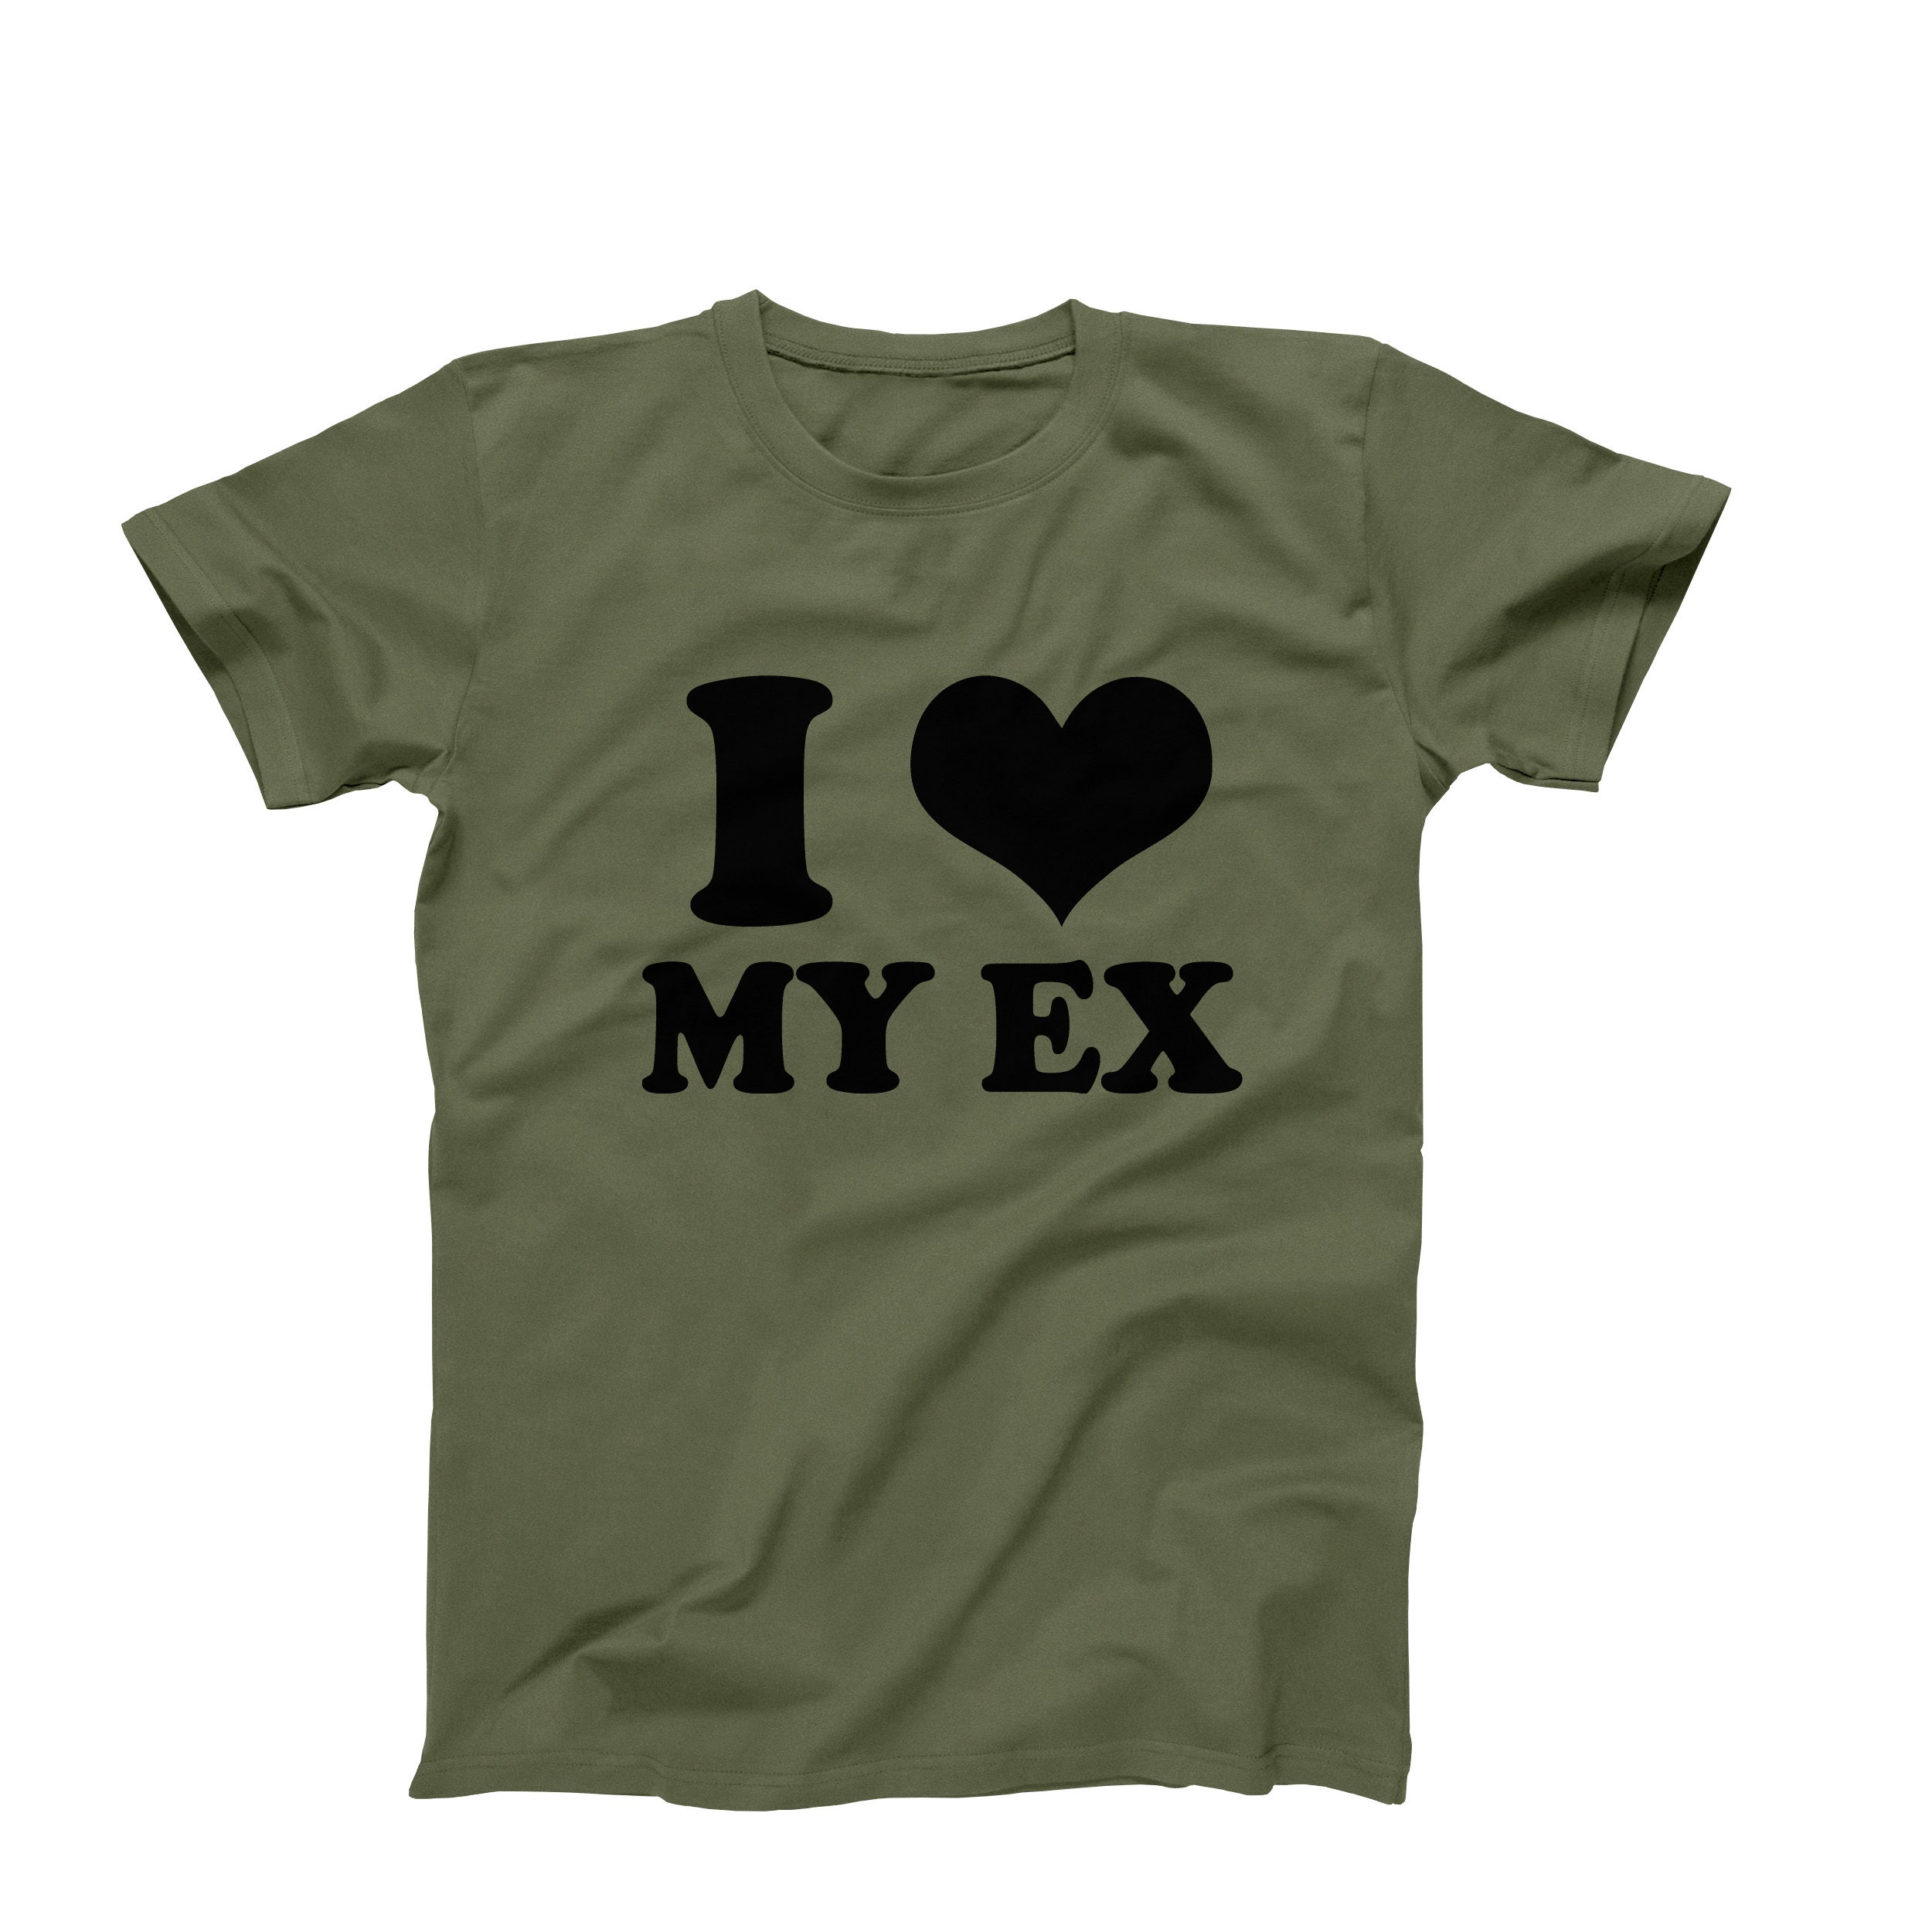 I Love My Ex T-shirt I Heart My Ex Shirt I Heart My Ex